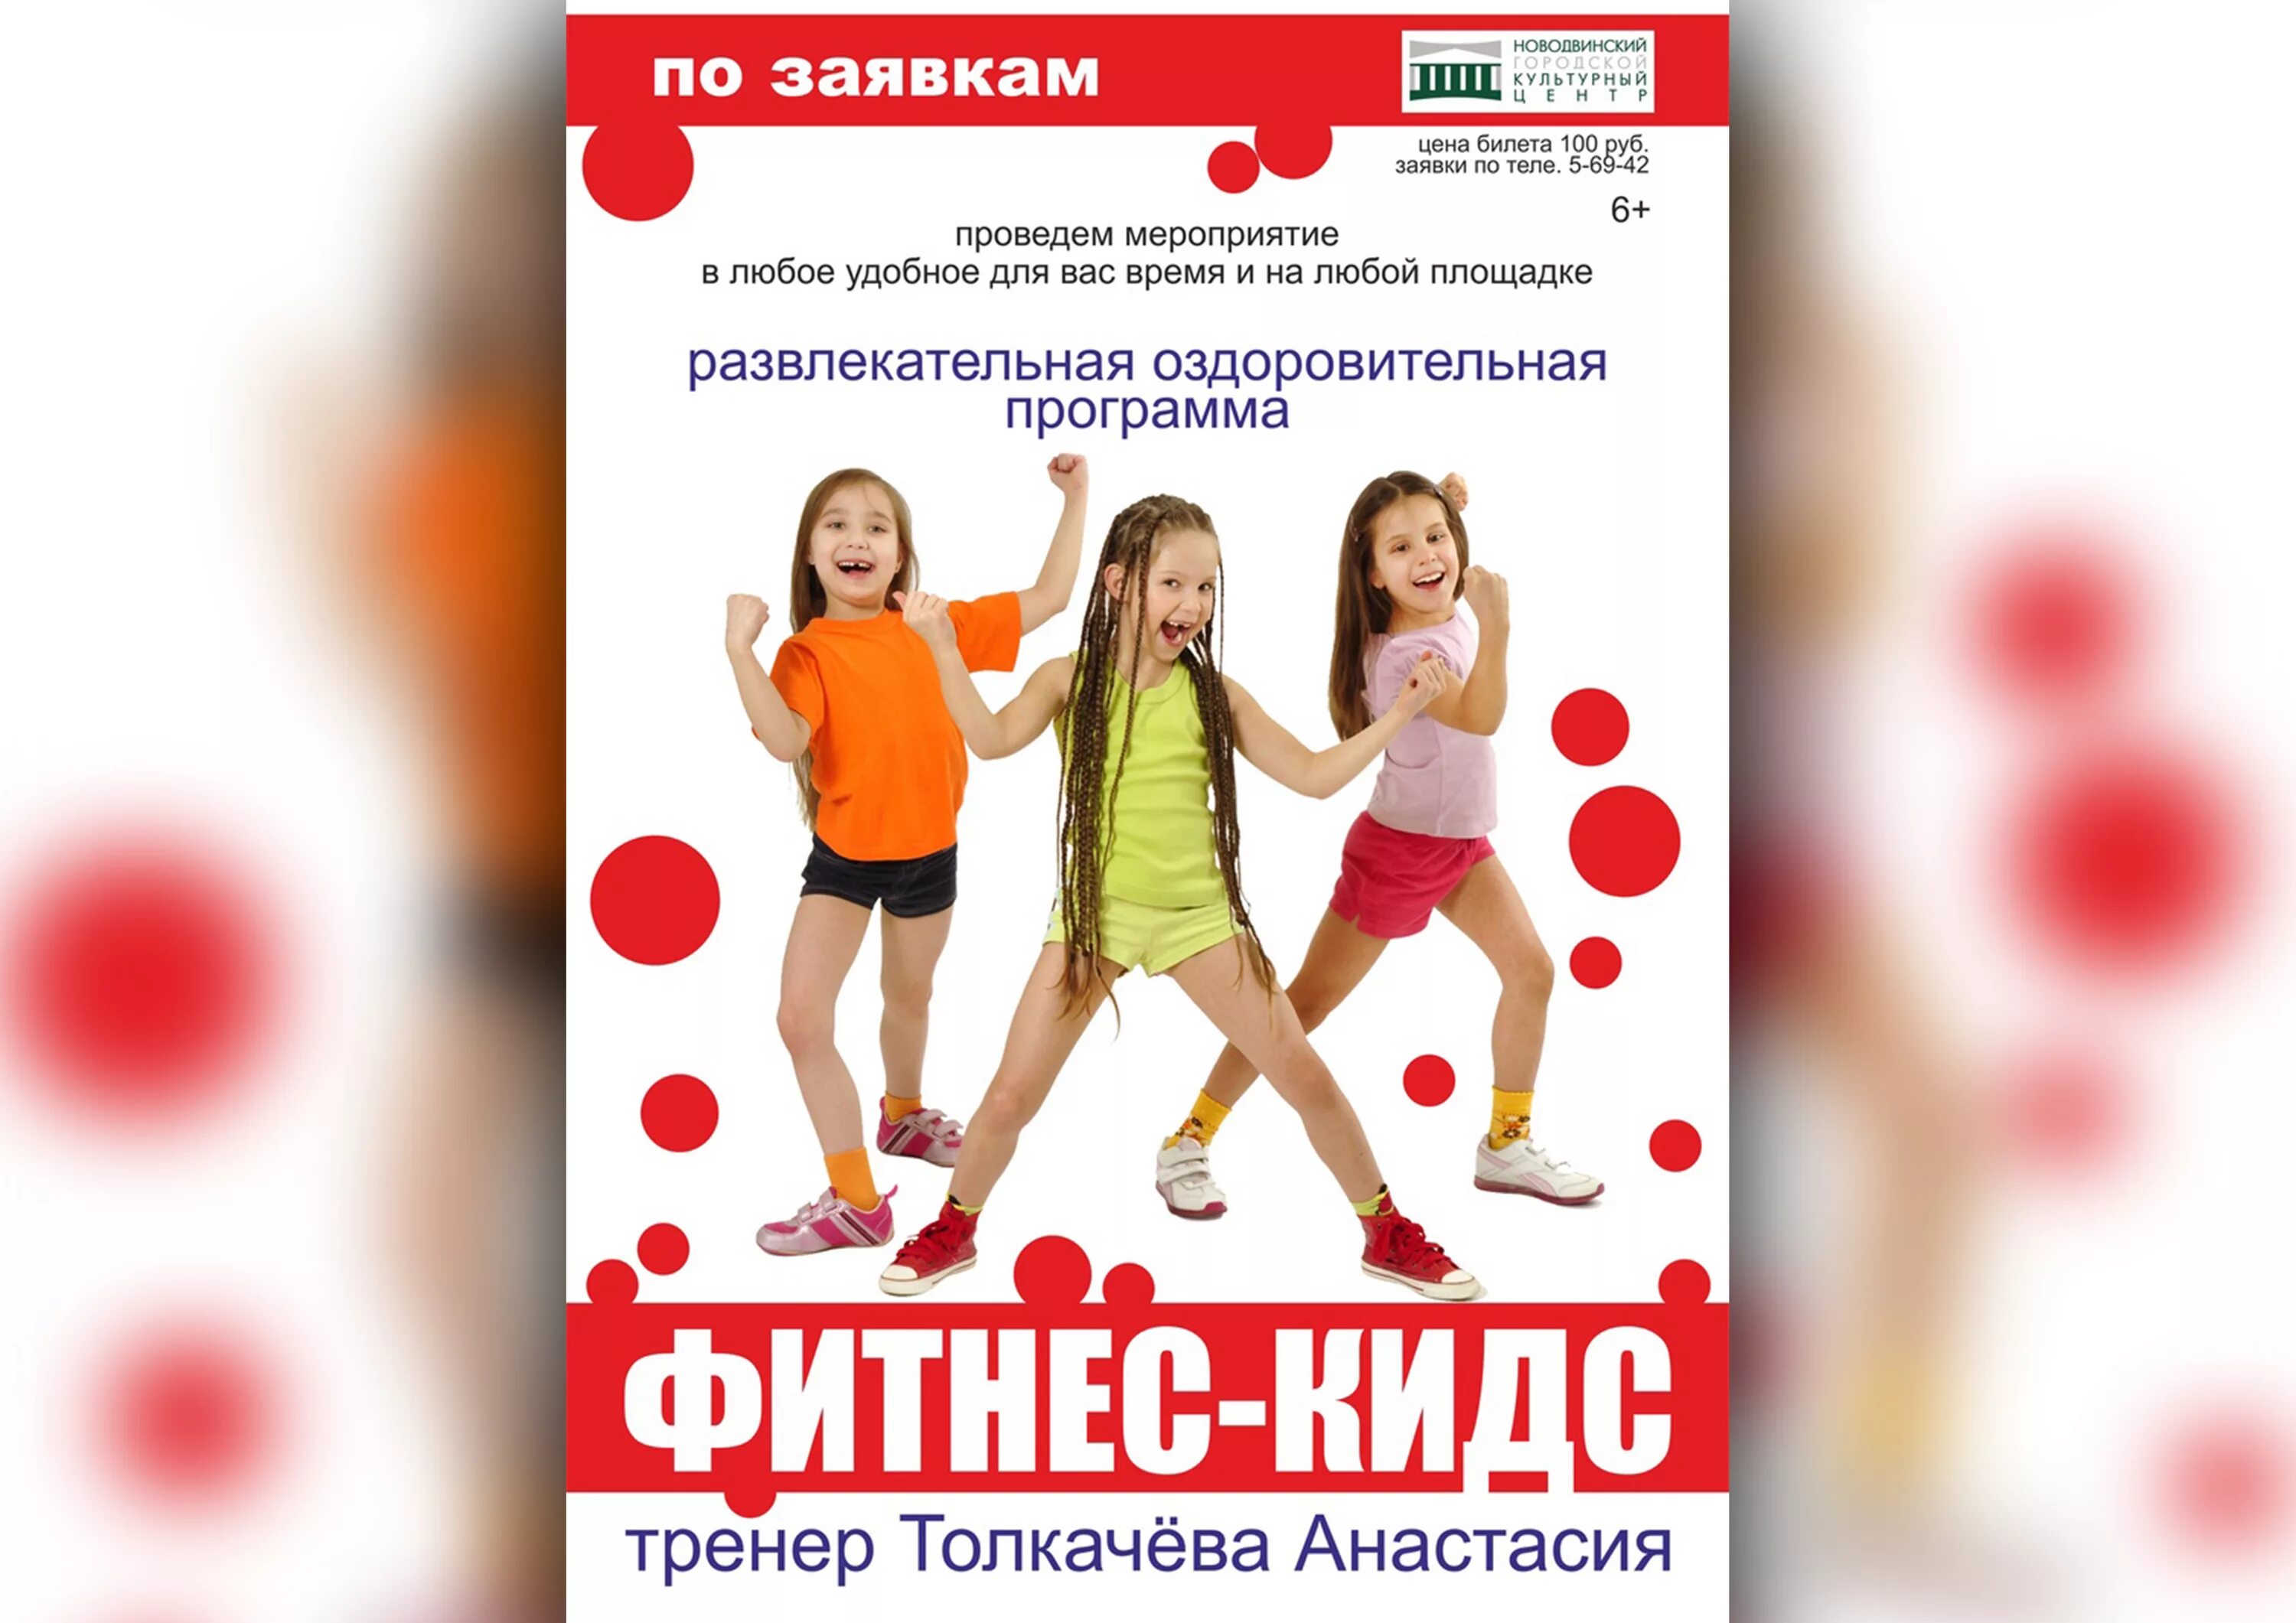 Детский фитнес. Фитнес для детей реклама. Название детского фитнеса. Объявление фитнес для детей.